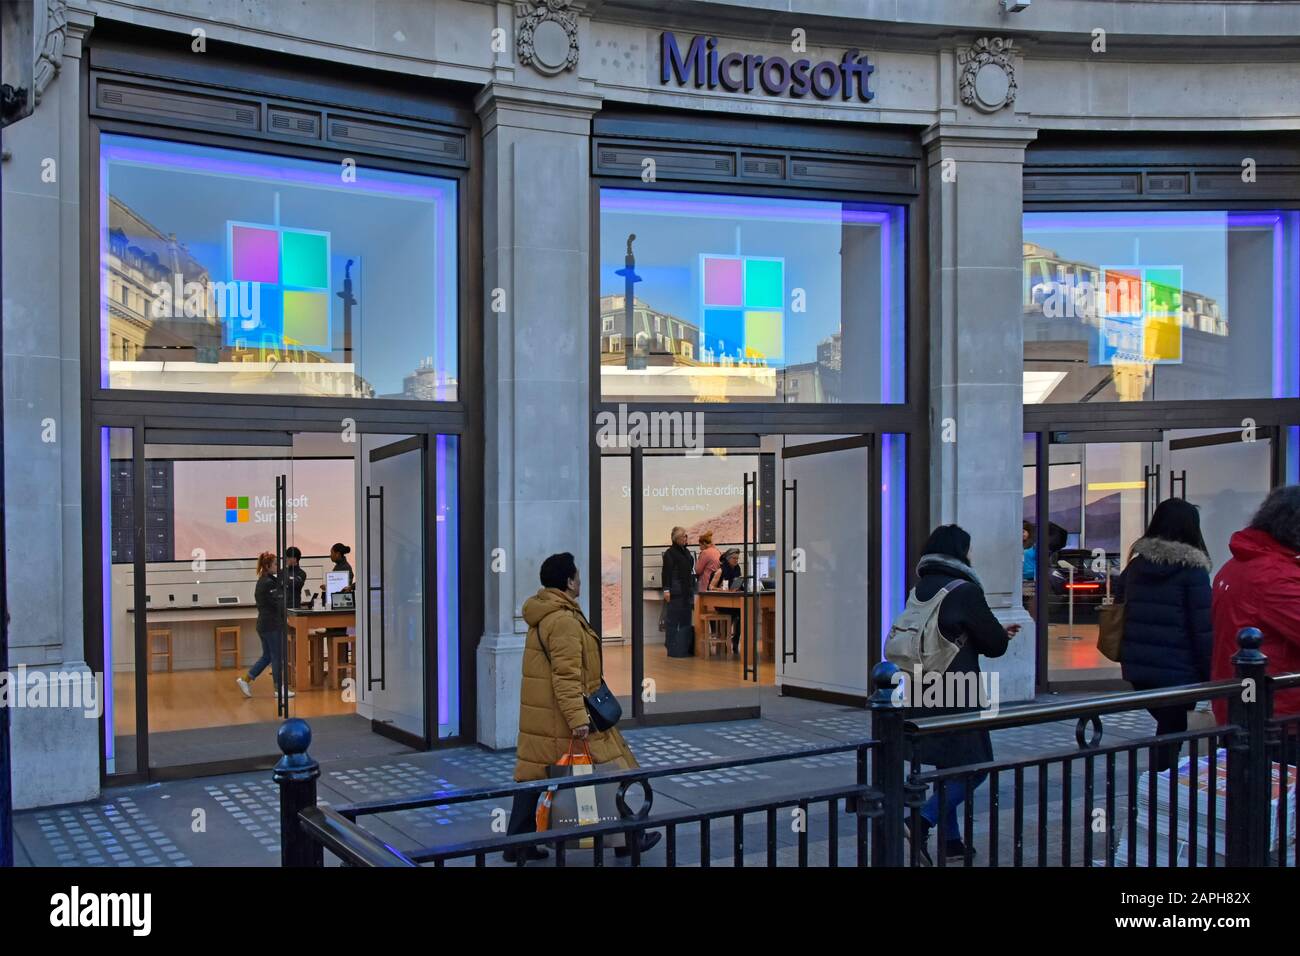 Microsoft Store & Retail showroom business traitant dans les logiciels électroniques grand public et la technologie à Oxford Circus West End Londres Angleterre Royaume-Uni Banque D'Images